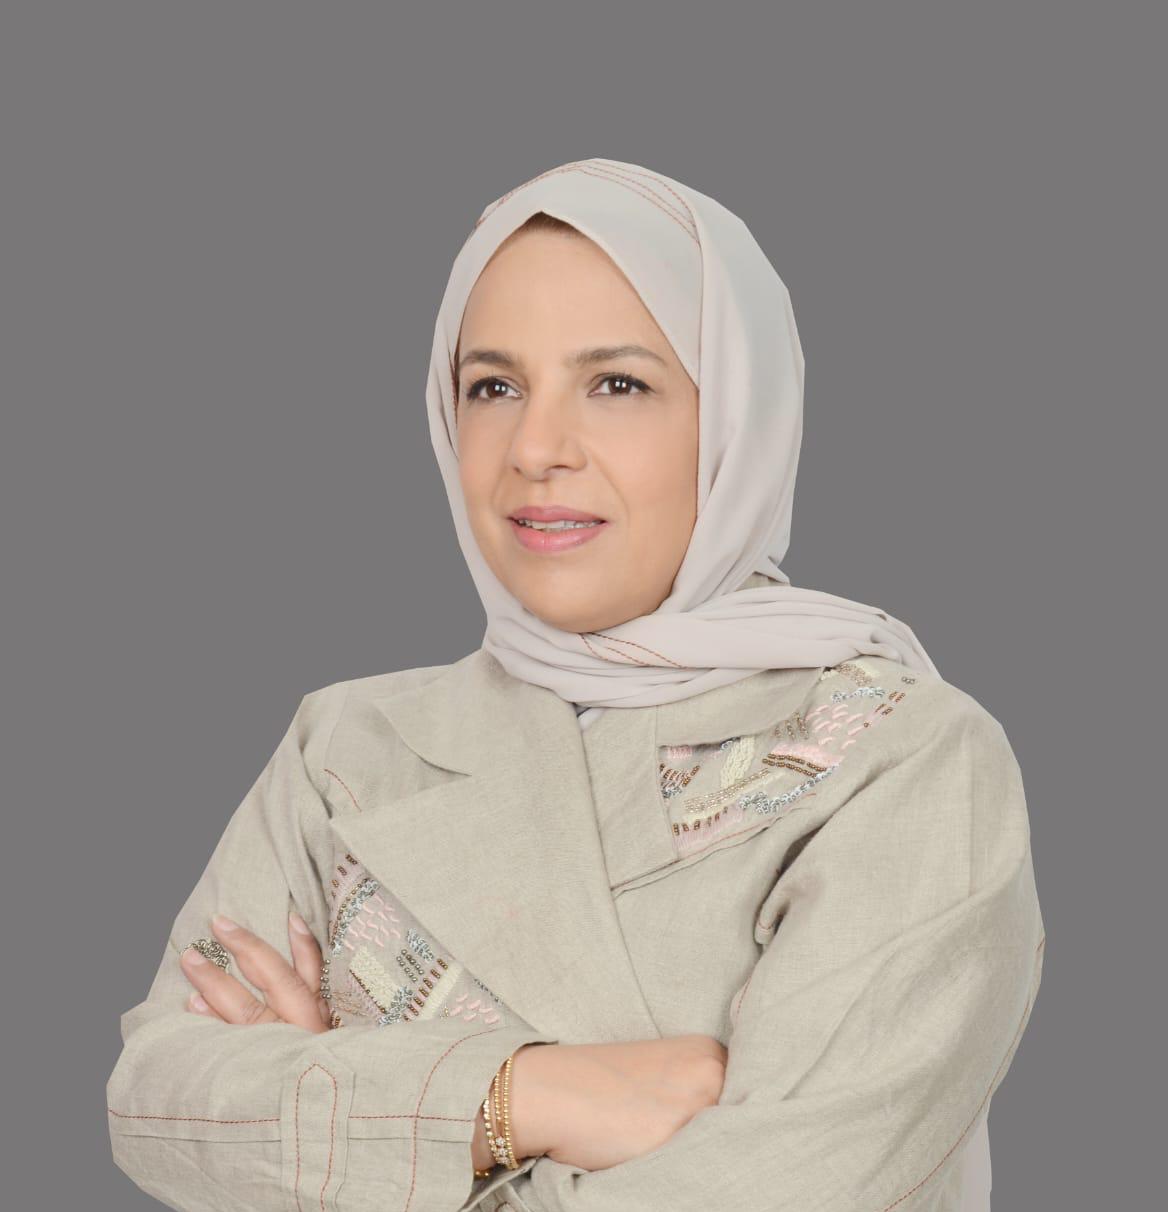 Najlaa bint Ibrahim Al-Sultan